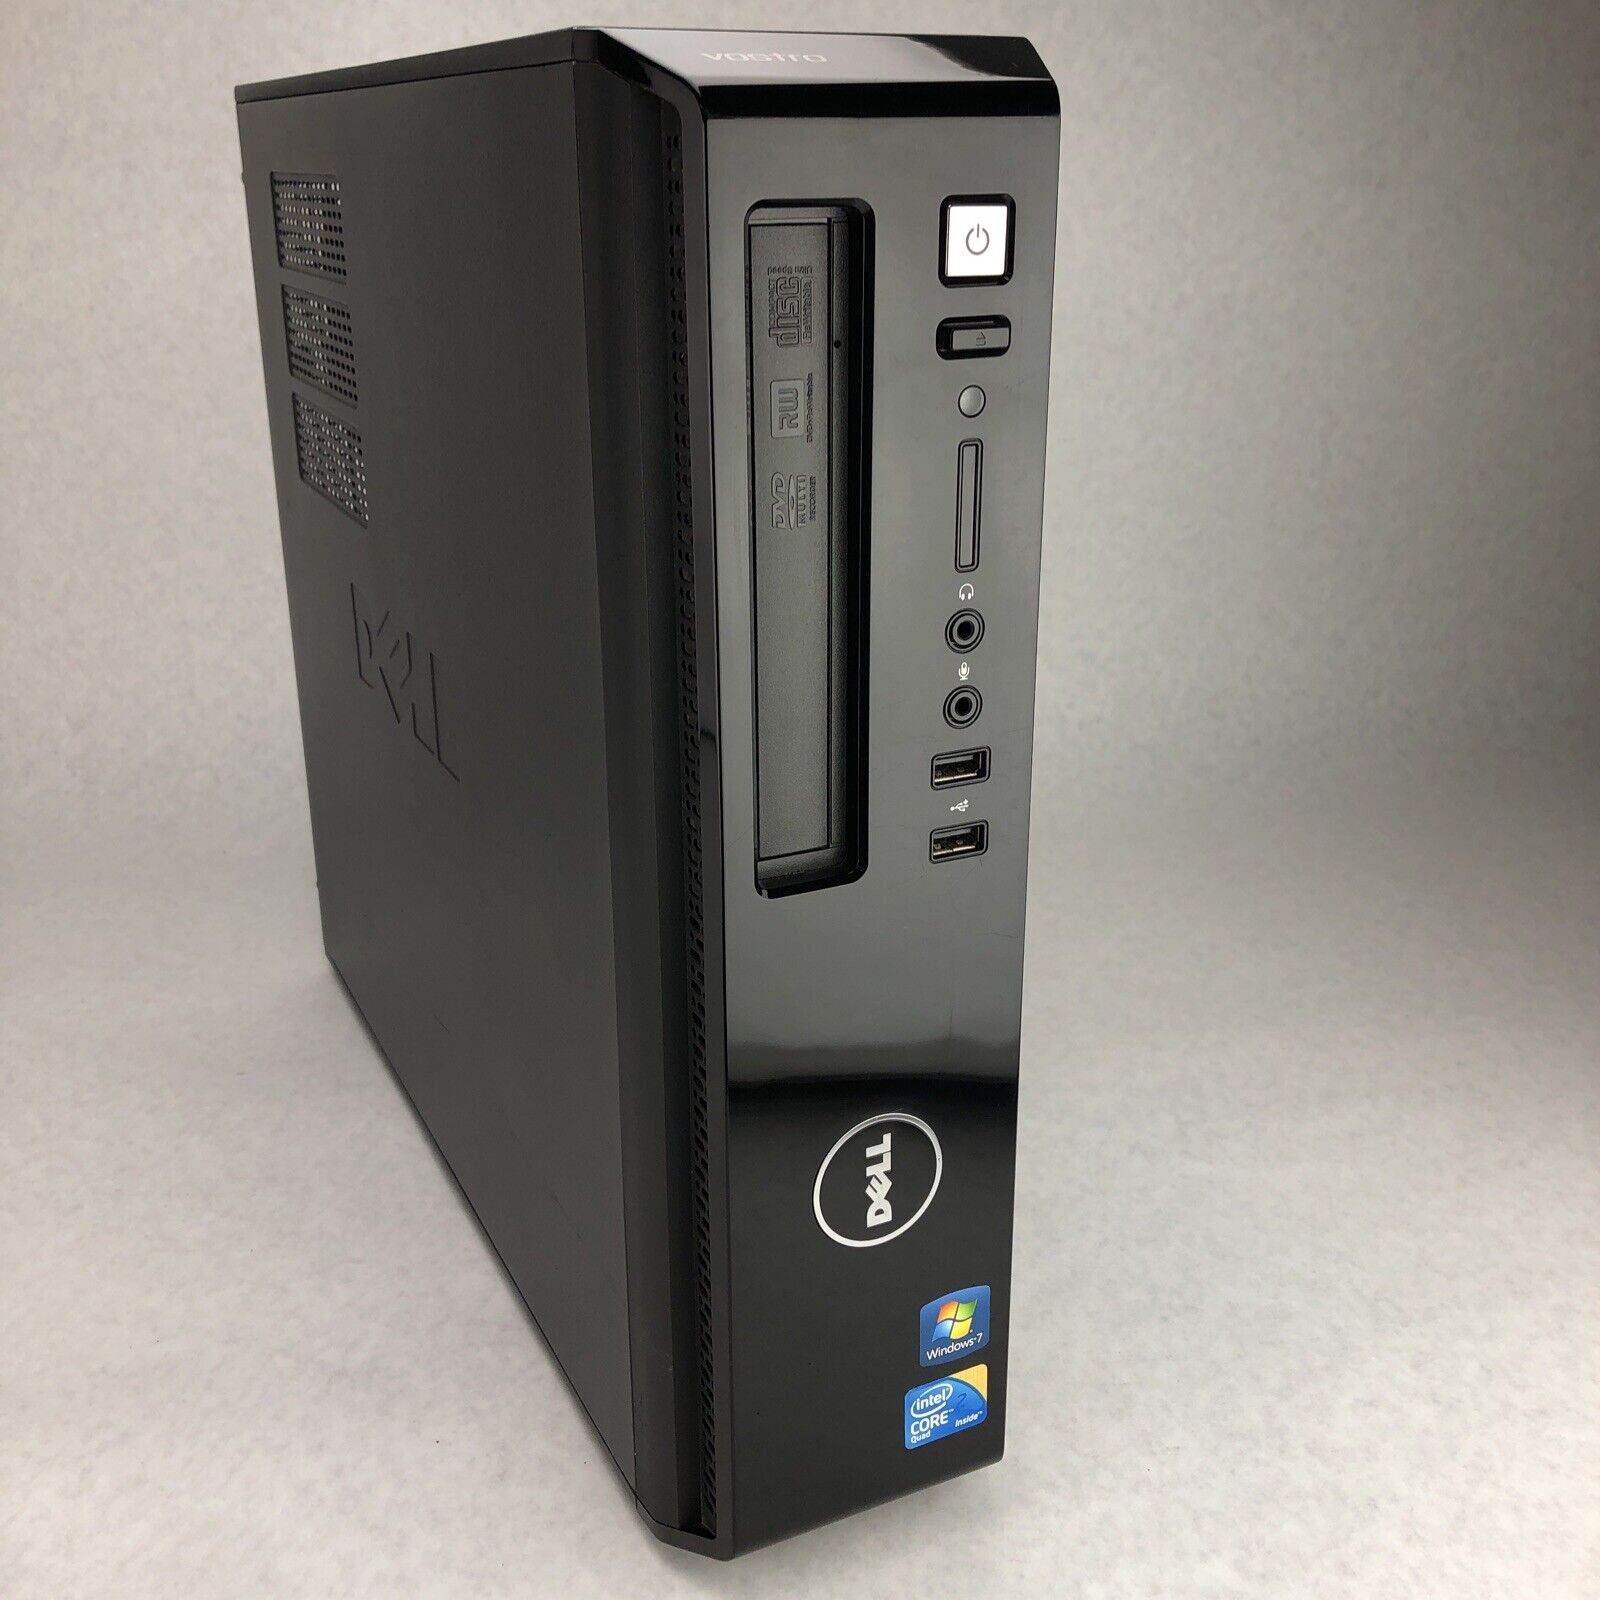 Dell Vostro 230 Slim Tower Pentium Dual Core E5400 2.70GHz 2GB RAM No HDD No OS